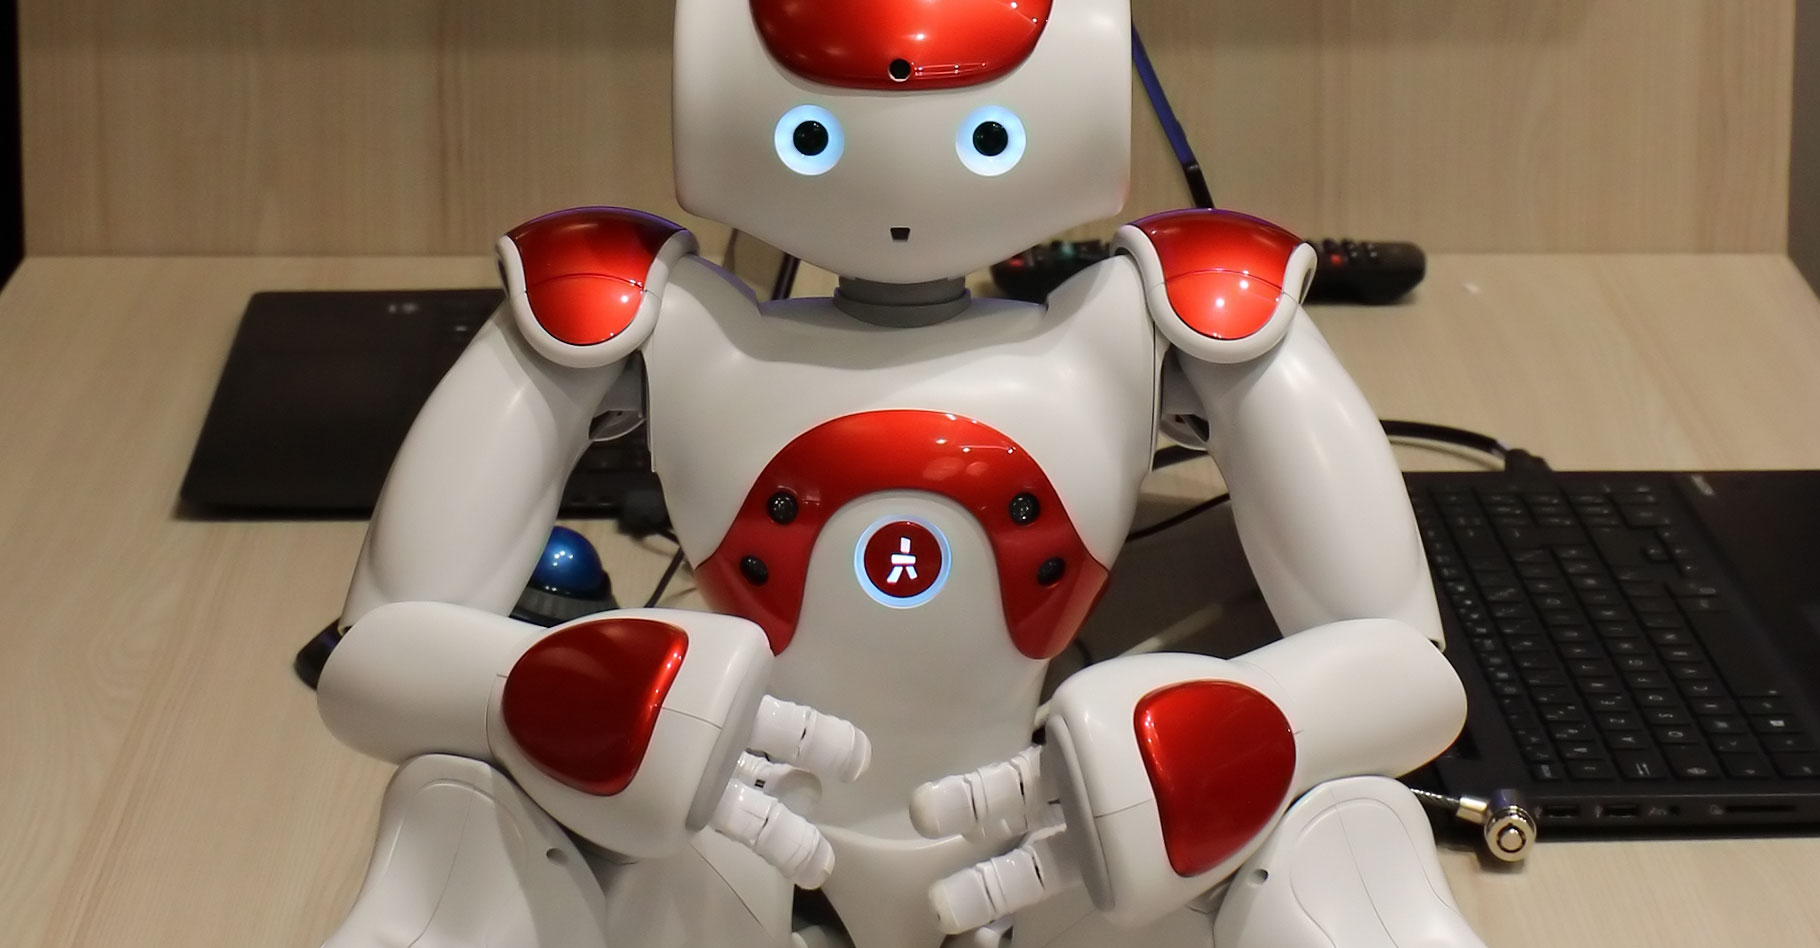 Robotique et investissements : drones, robots d'assistance et projet Nao